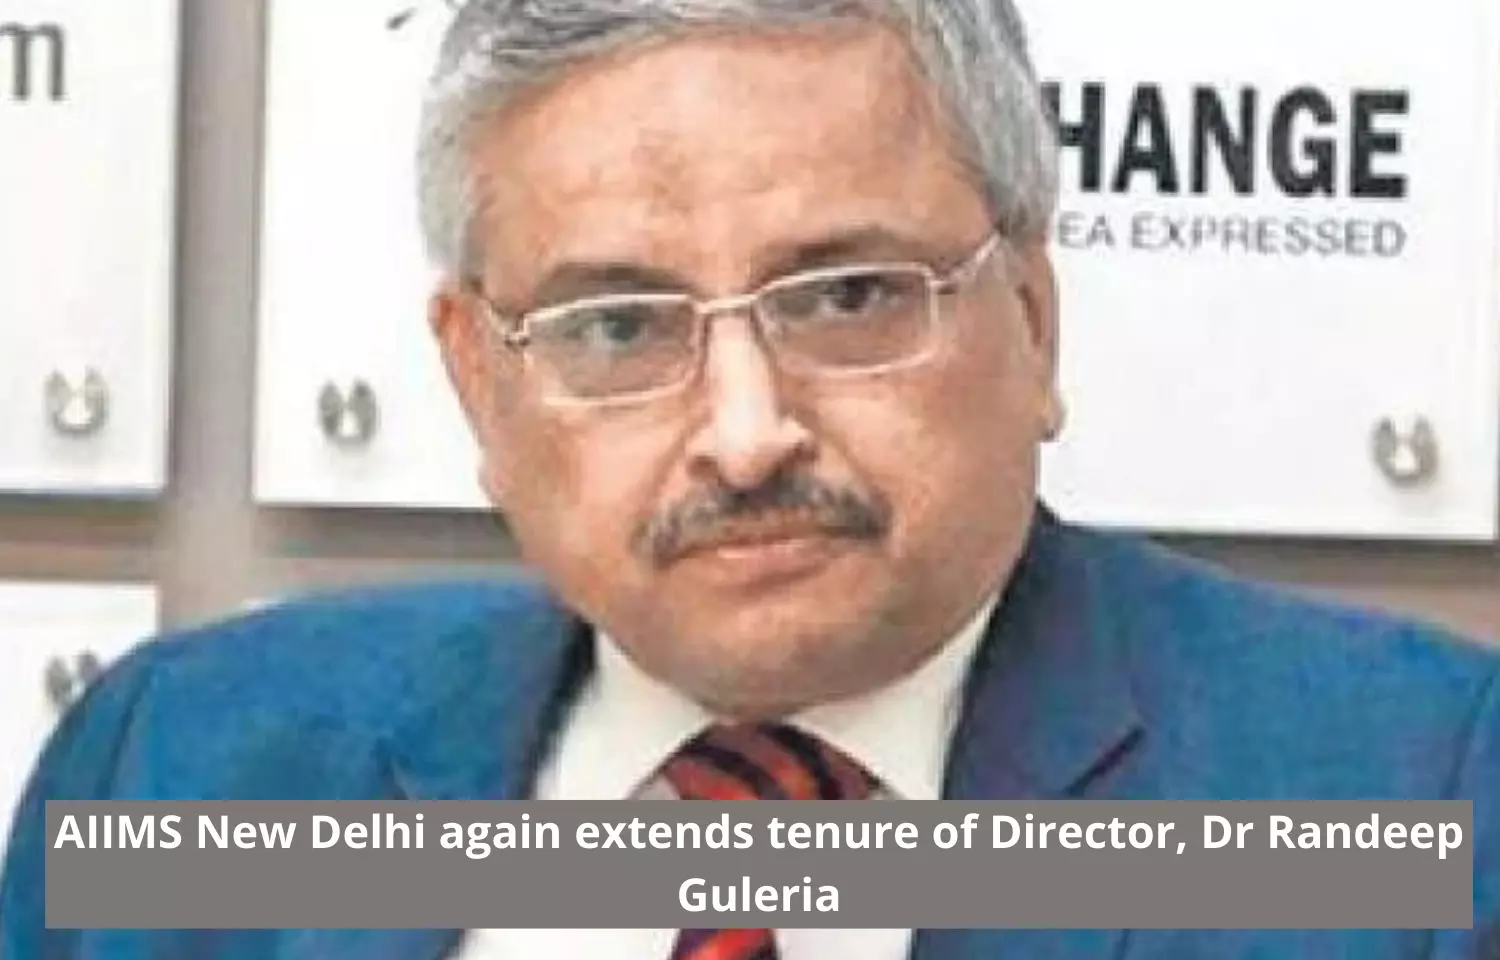 Tenure of AIIMS Director Dr Randeep Guleria extended again